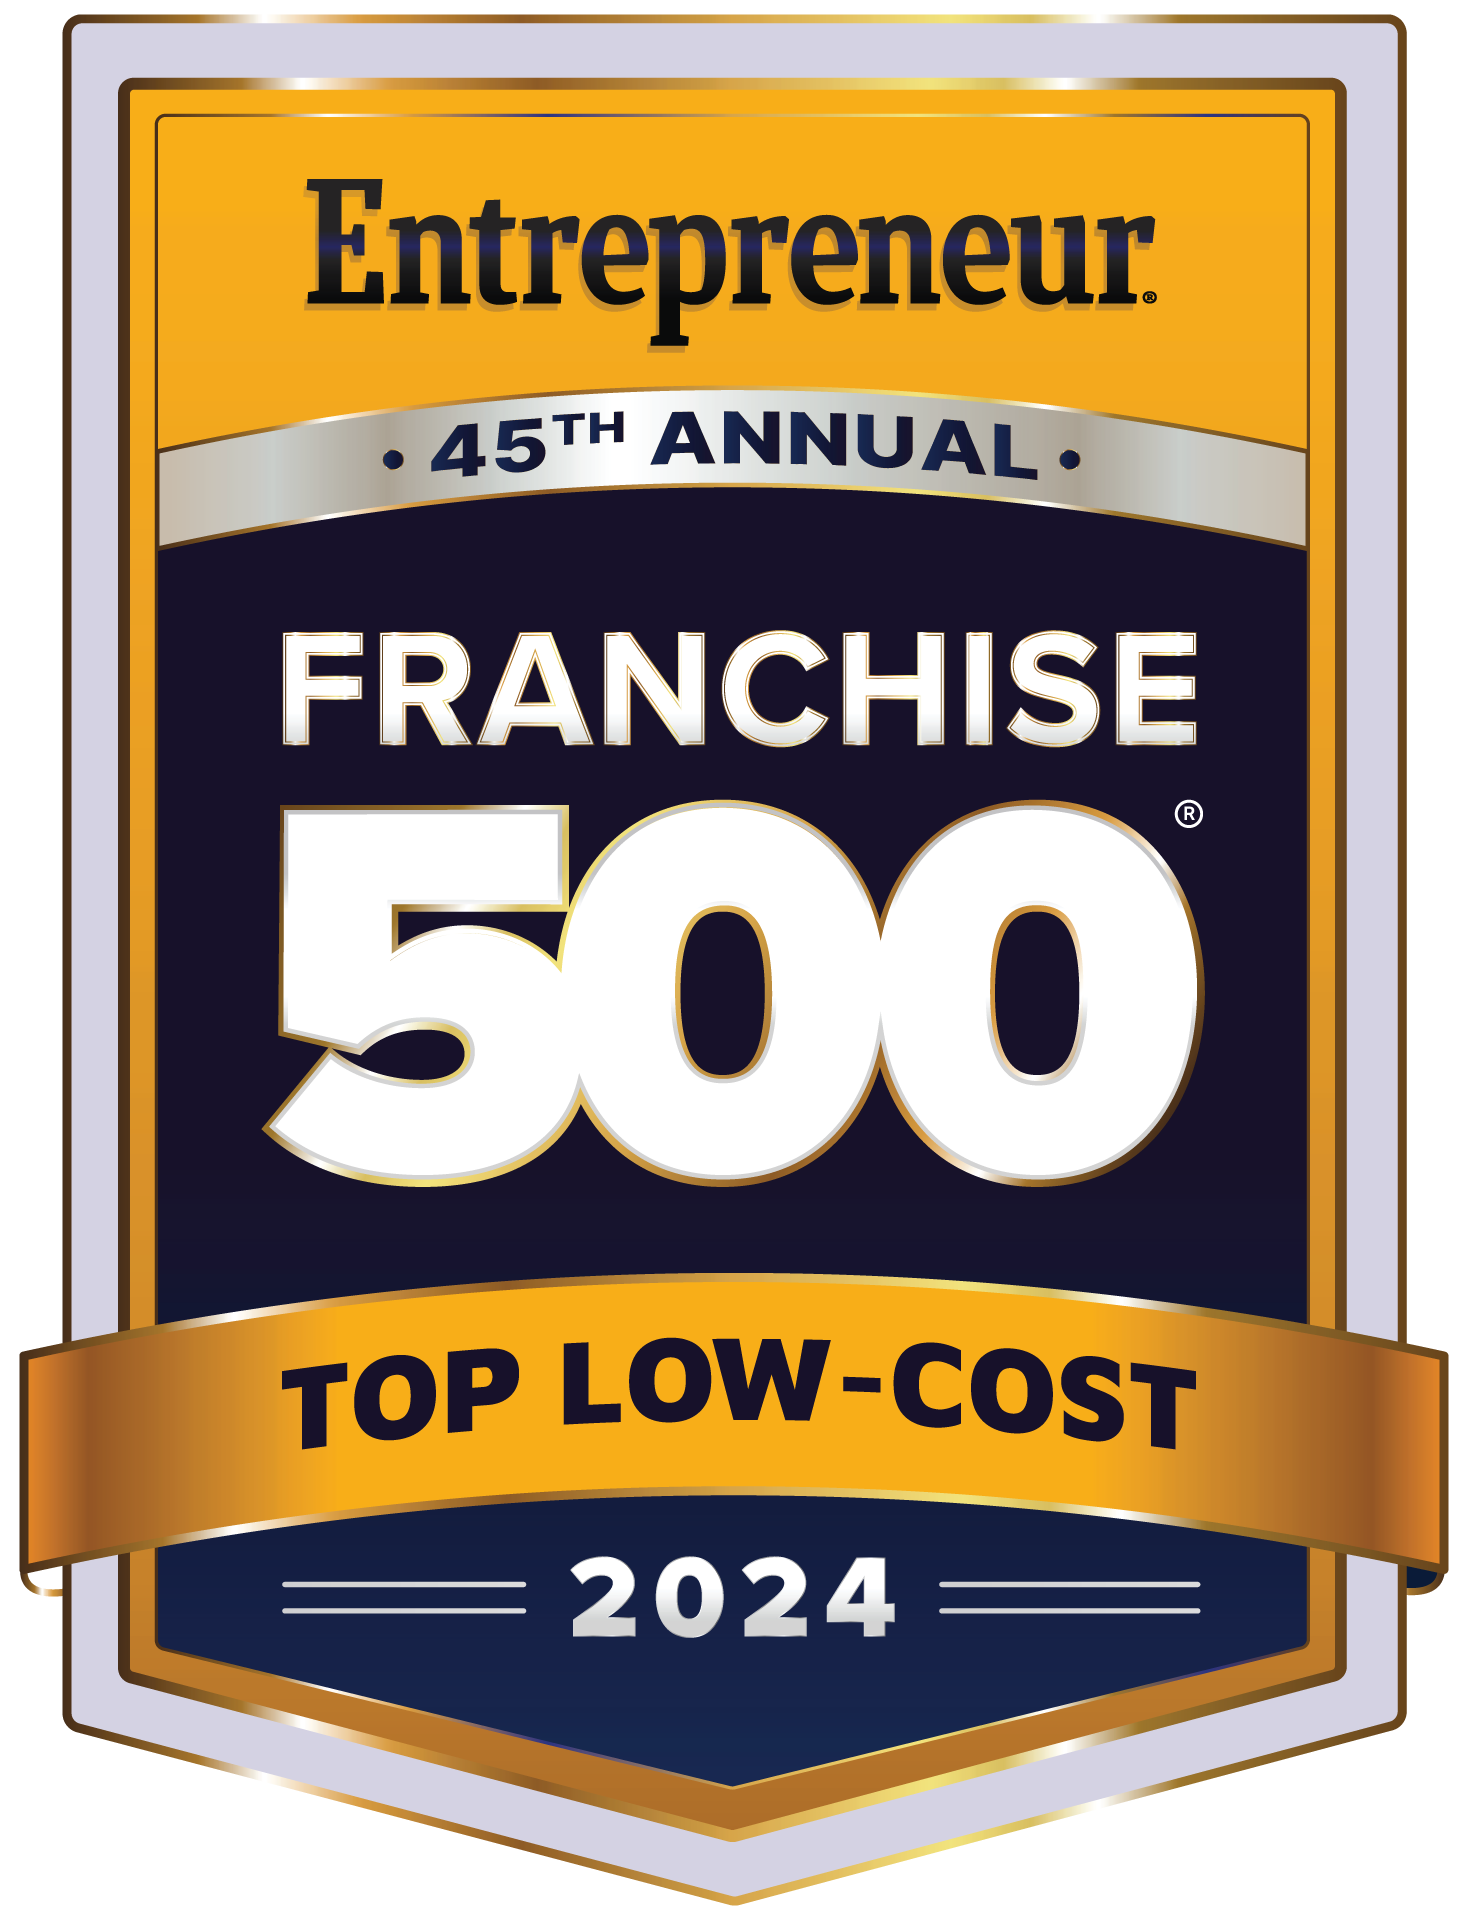 Entrepreneur Magazine Franchise 500 Top Low-Cost Franchises 2024